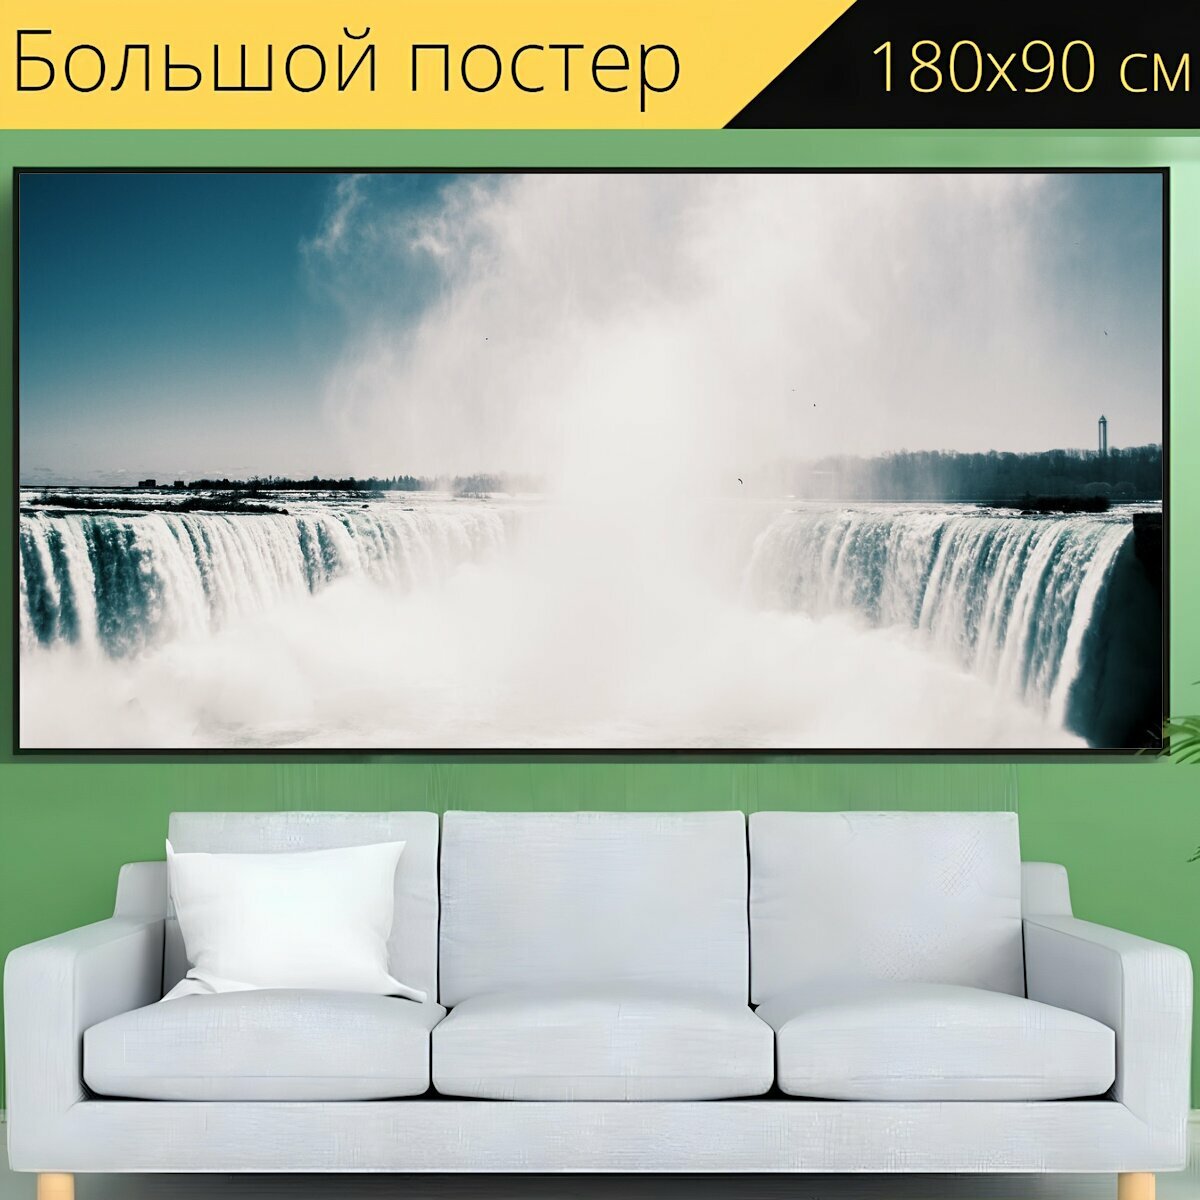 Большой постер "Туман, природа, ниагарский водопад" 180 x 90 см. для интерьера